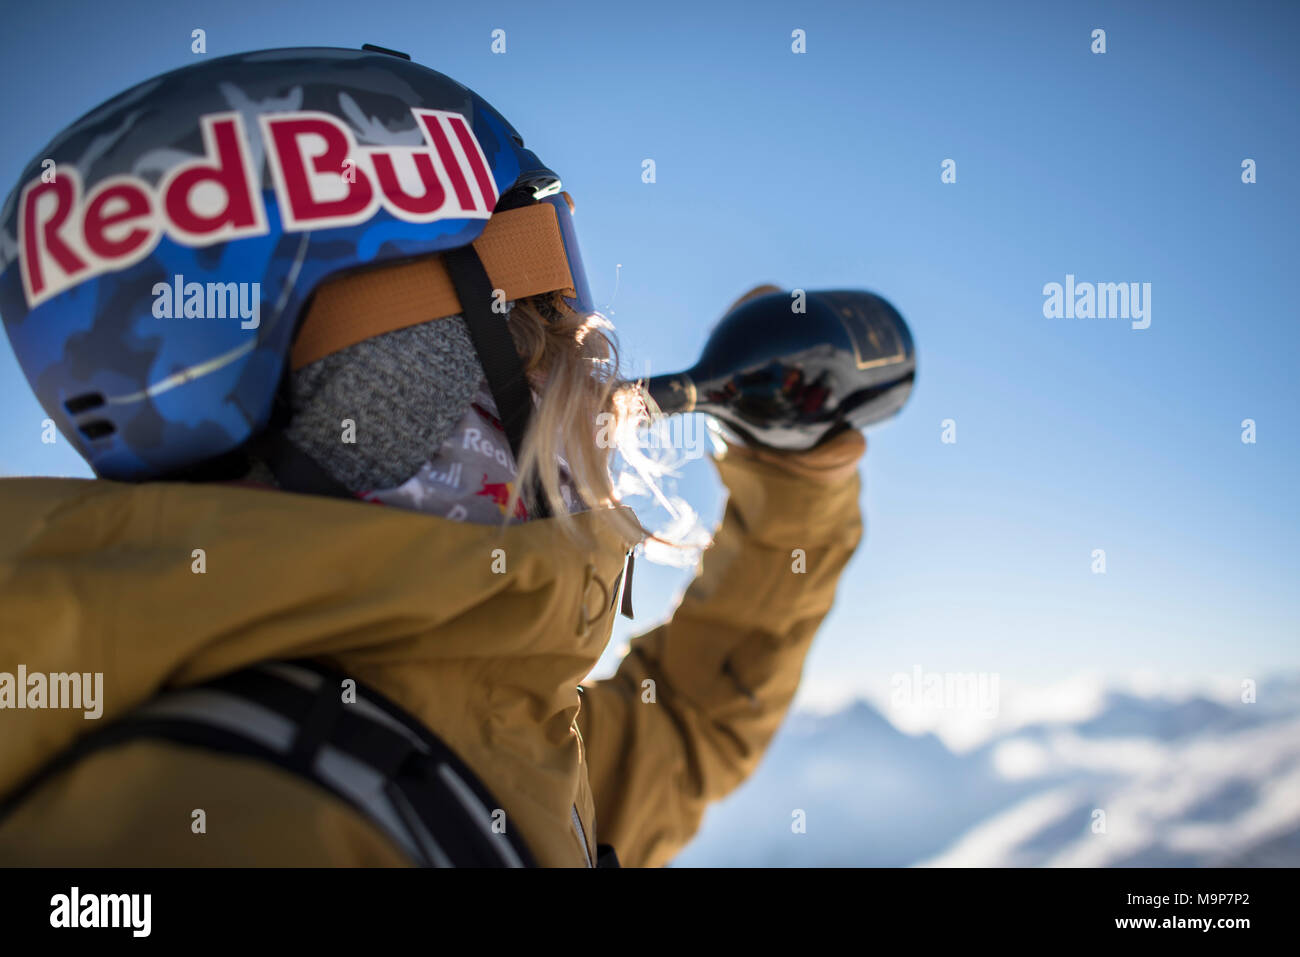 Skifahrer in skibekleidung Wein trinken aus der Flasche, Monterosa Ski Mountain Resort in Gressoney, Aosta, Italien Stockfoto